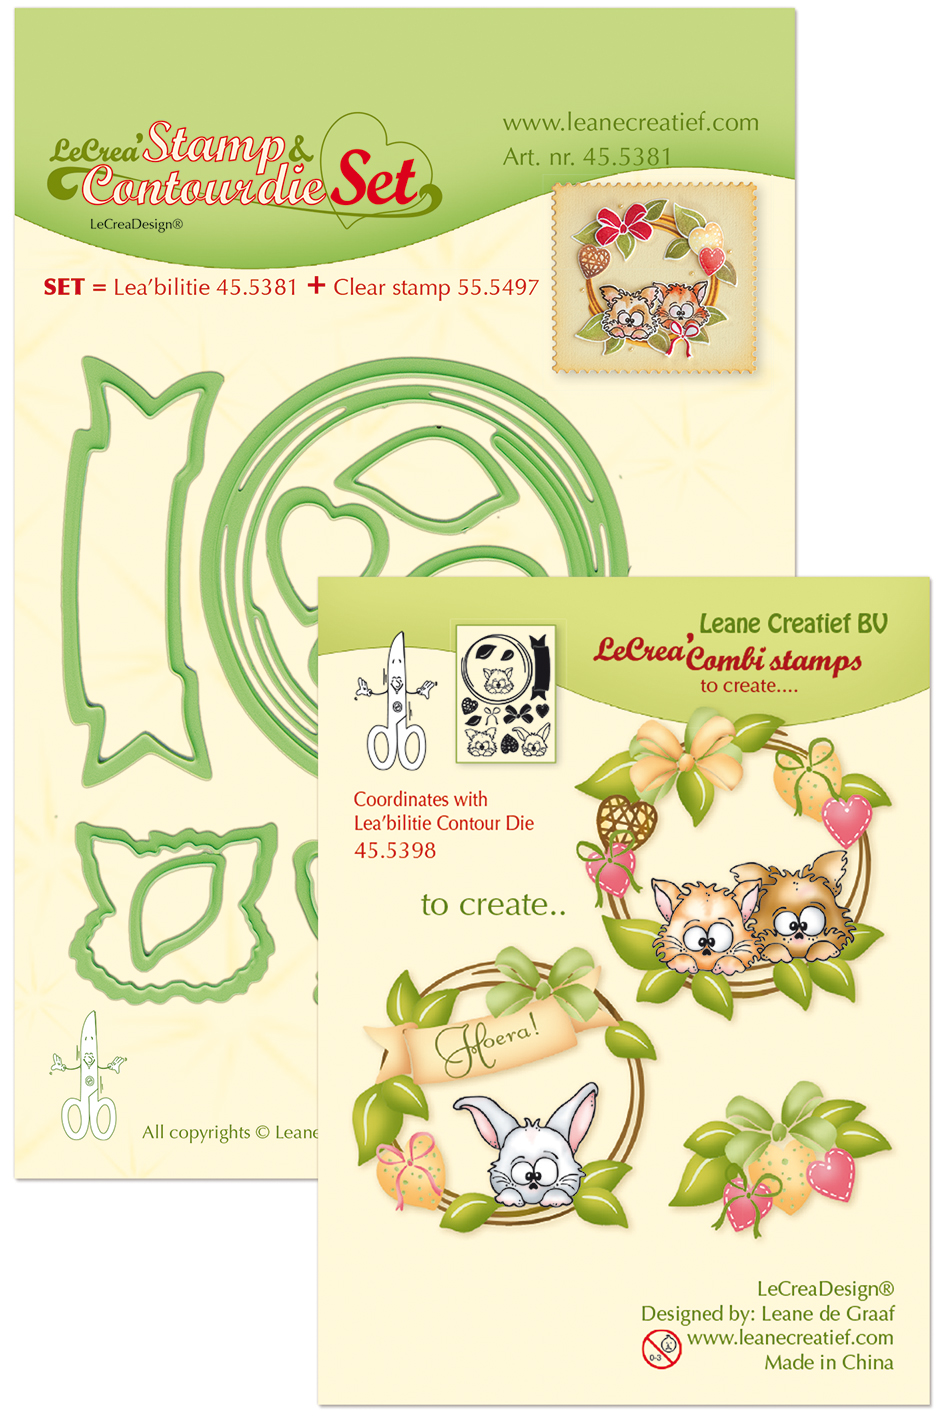 LeCrea Stamp & Contour Die Set - Wreath with Pets